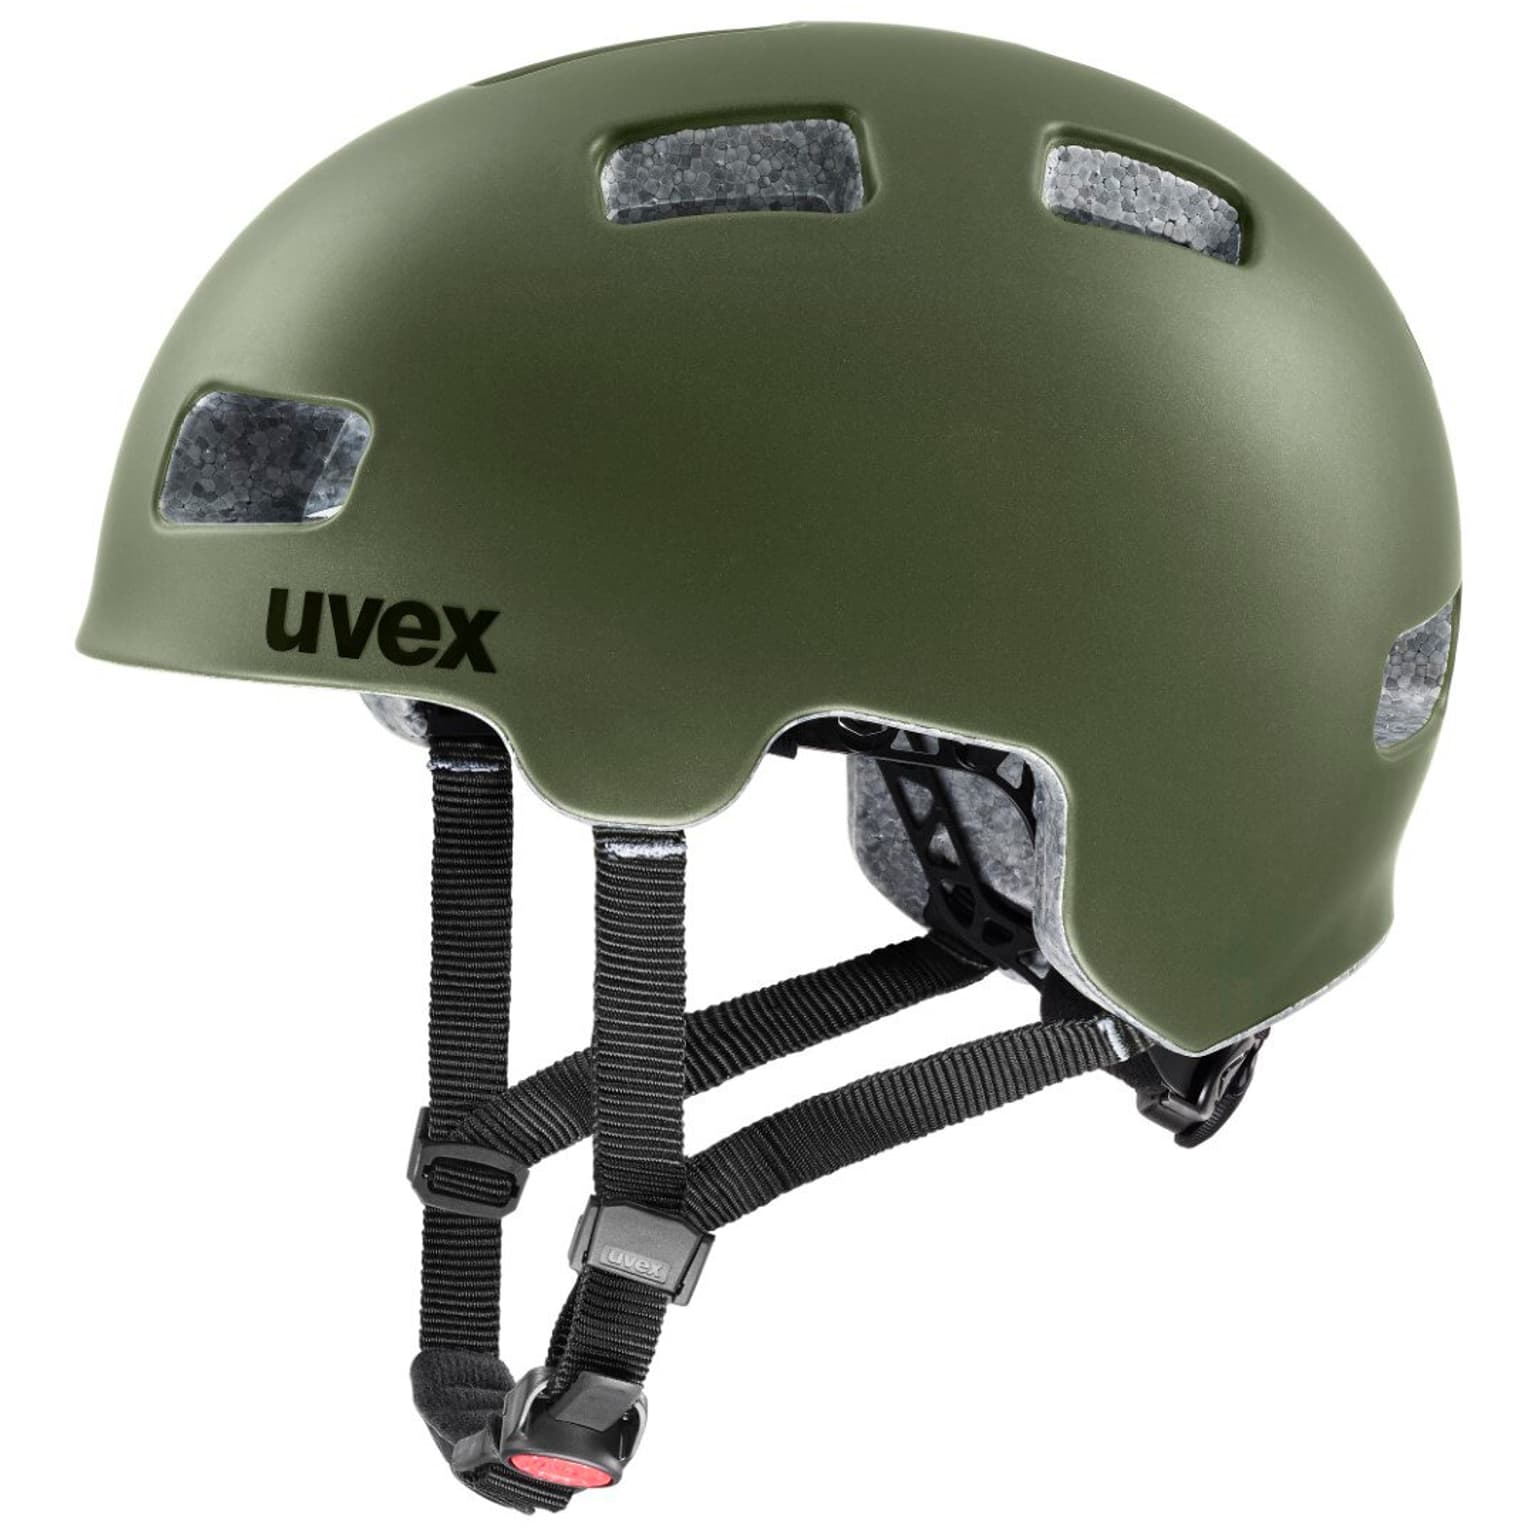 Uvex Uvex hlmt 4 cc Velohelm olive 1